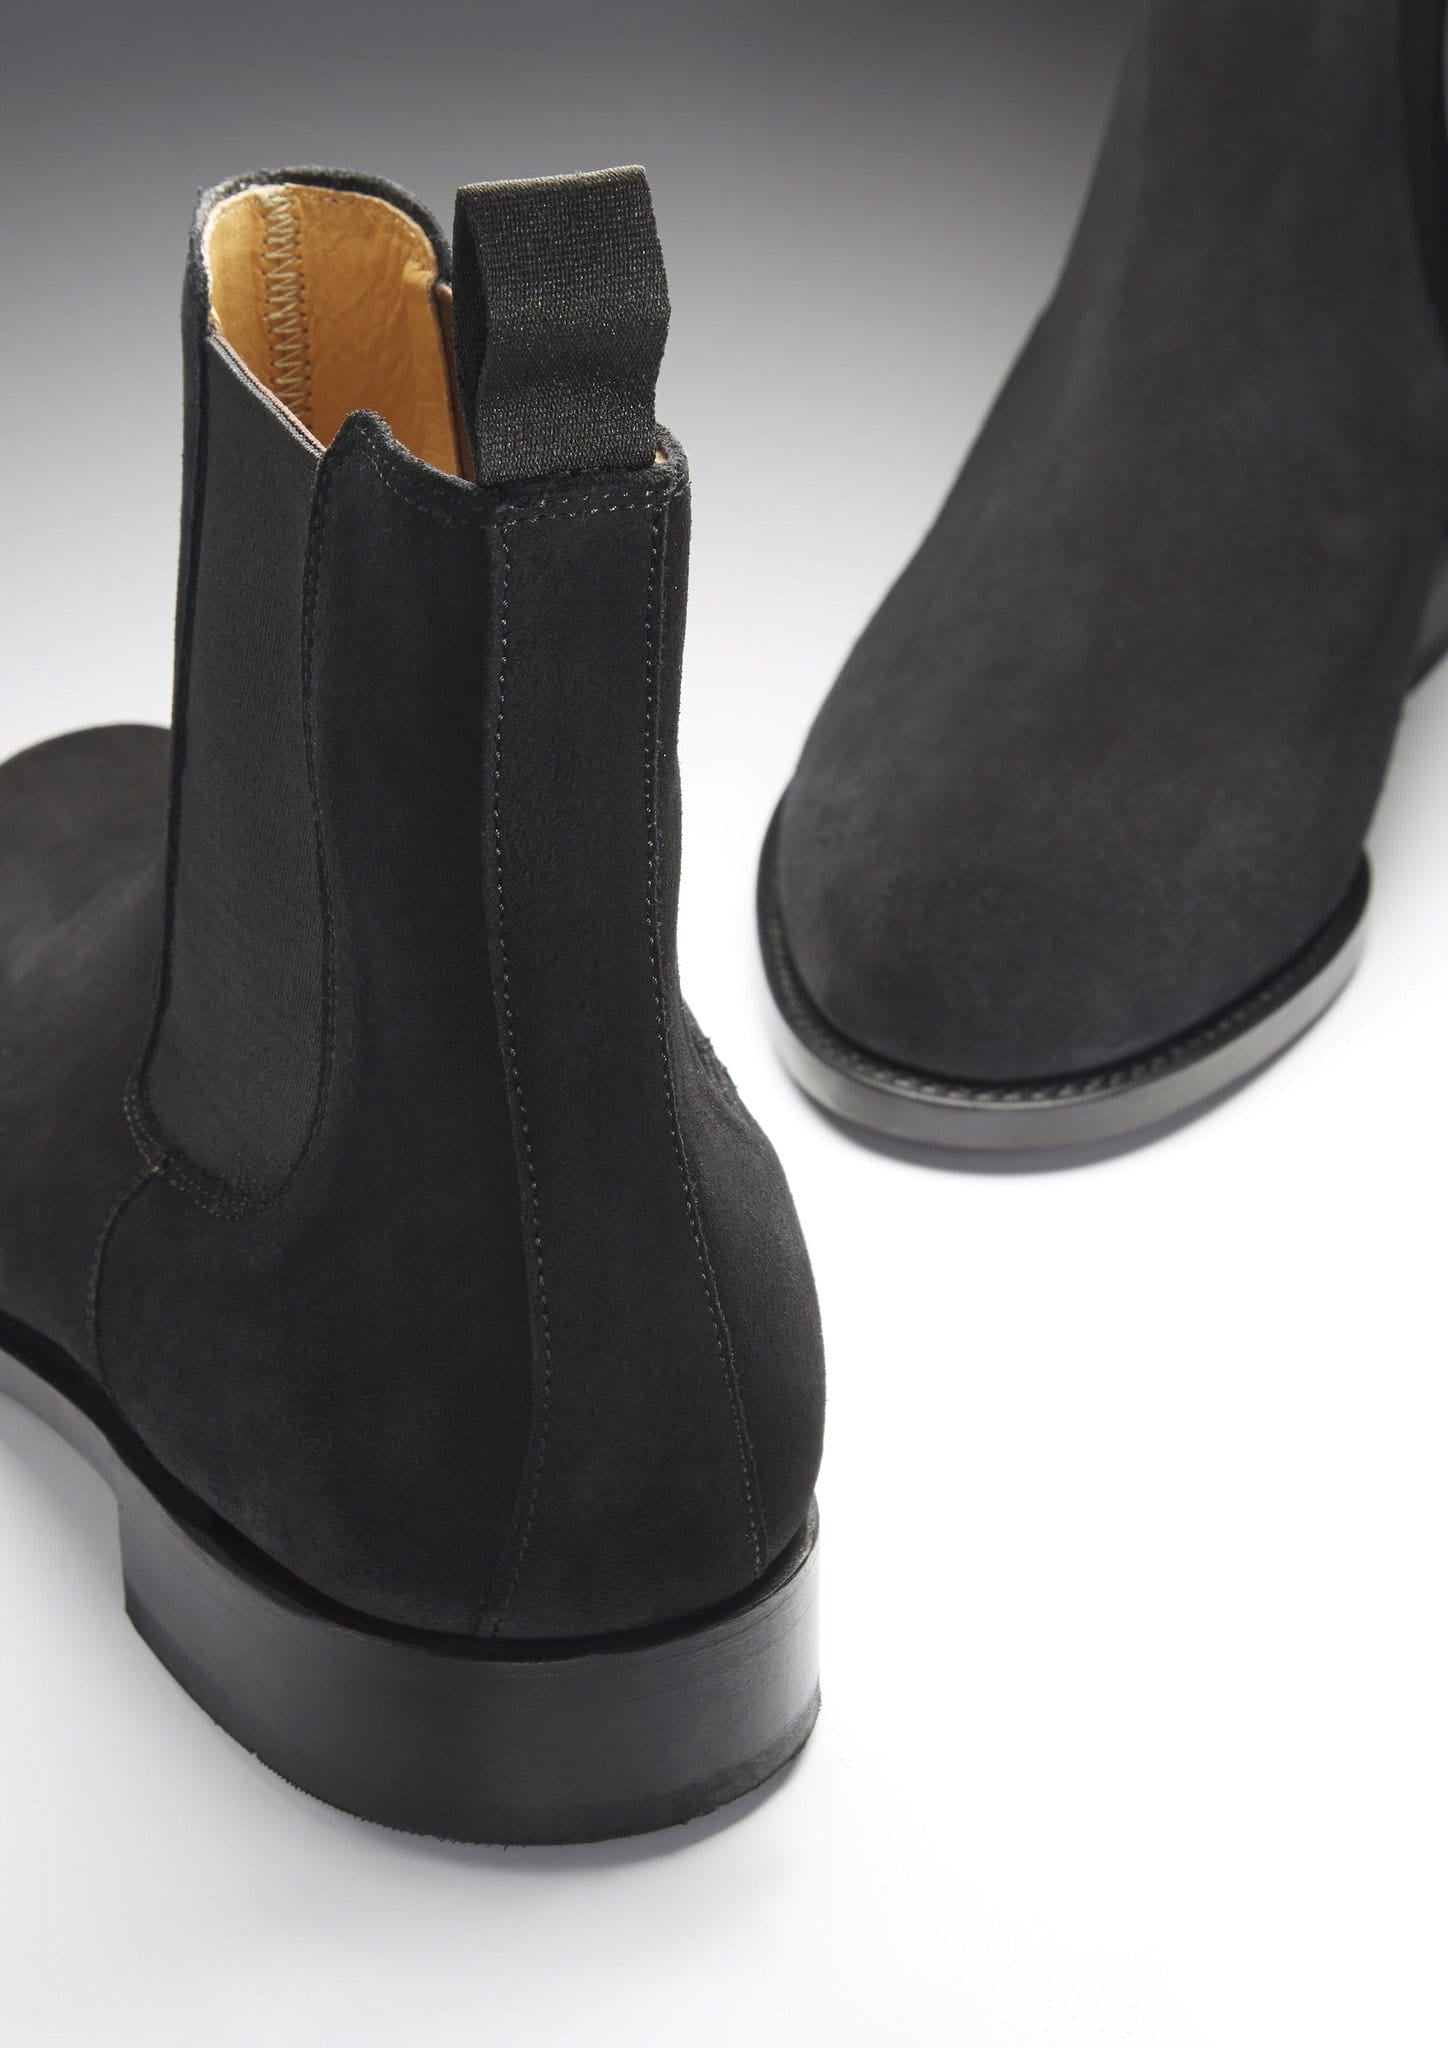 Chelsea-Stiefel aus schwarzem Wildleder, rahmengenähte Ledersohle